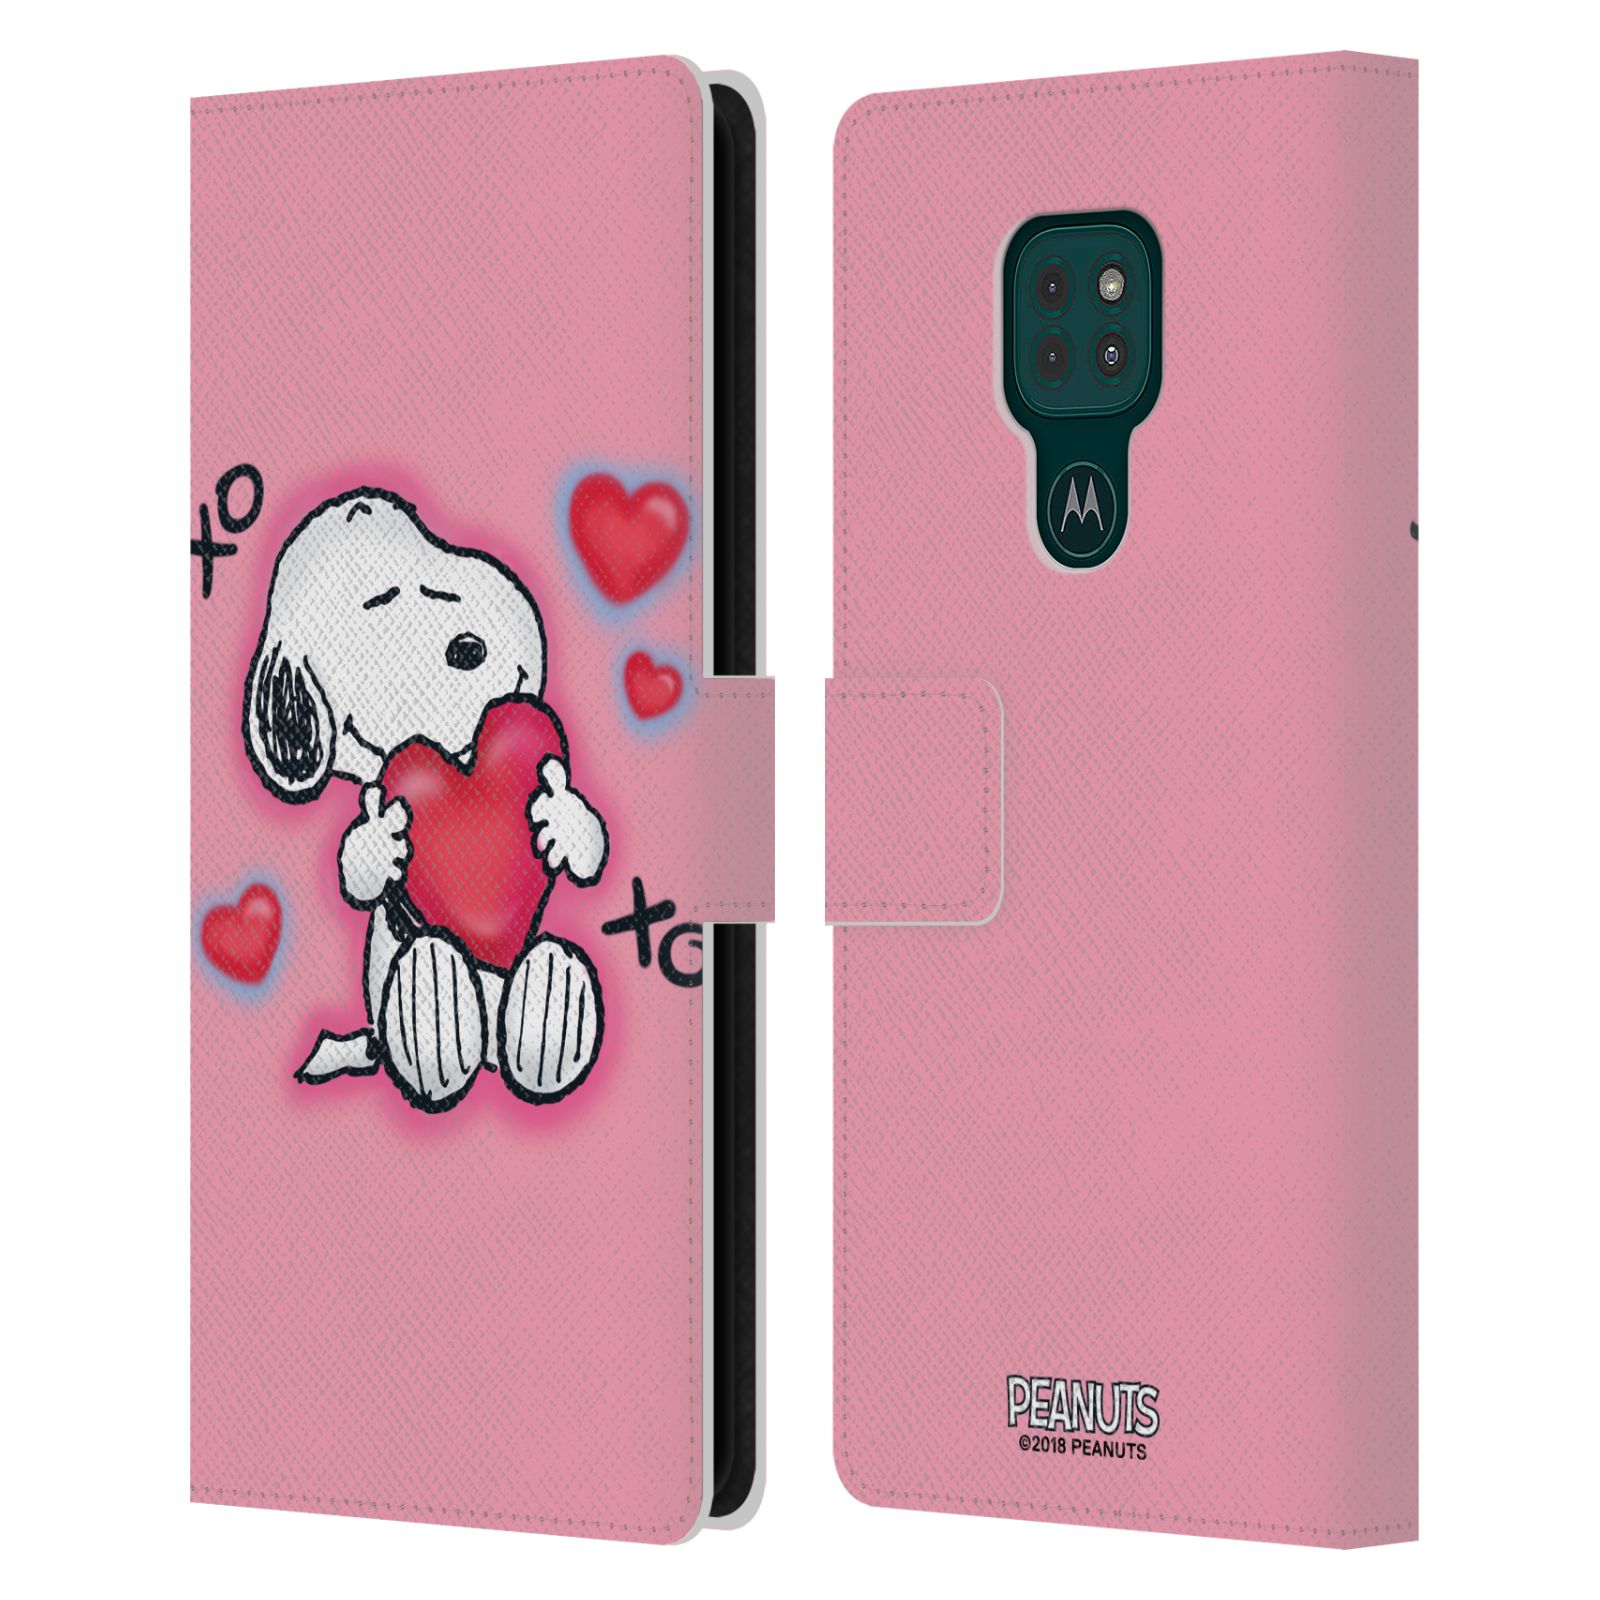 Pouzdro na mobil Motorola Moto G9 PLAY - HEAD CASE - Peanuts - Snoopy a srdíčka